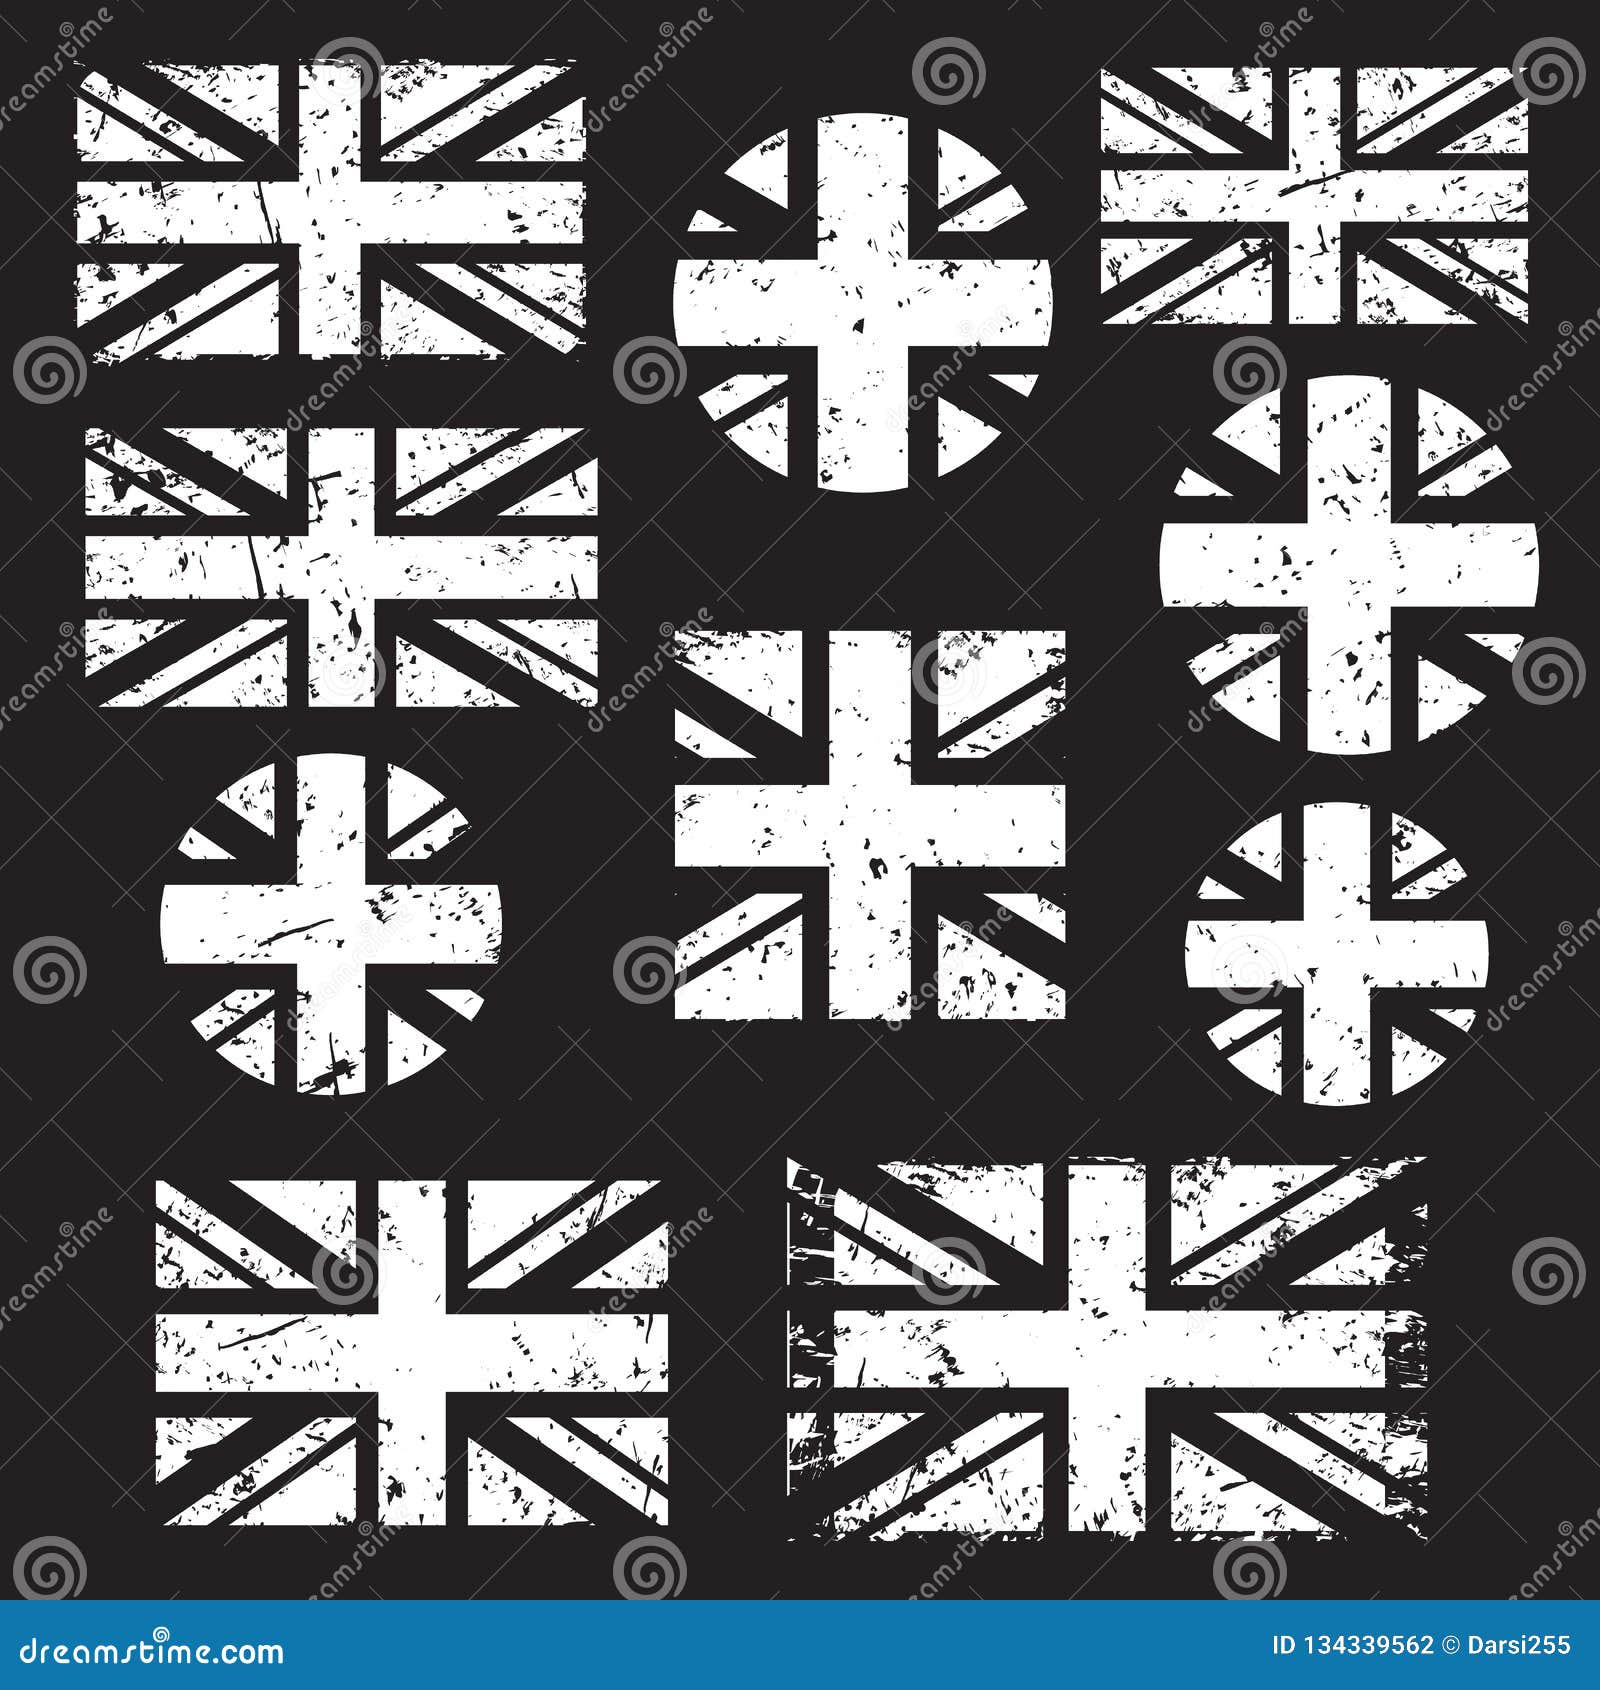 Cờ Đại-Britain đại diện cho tầm ảnh hưởng và sức mạnh của đất nước này. Nếu bạn muốn tìm hiểu thêm về văn hóa và lịch sử của Anh, hãy xem hình ảnh cờ Đại-Britain.